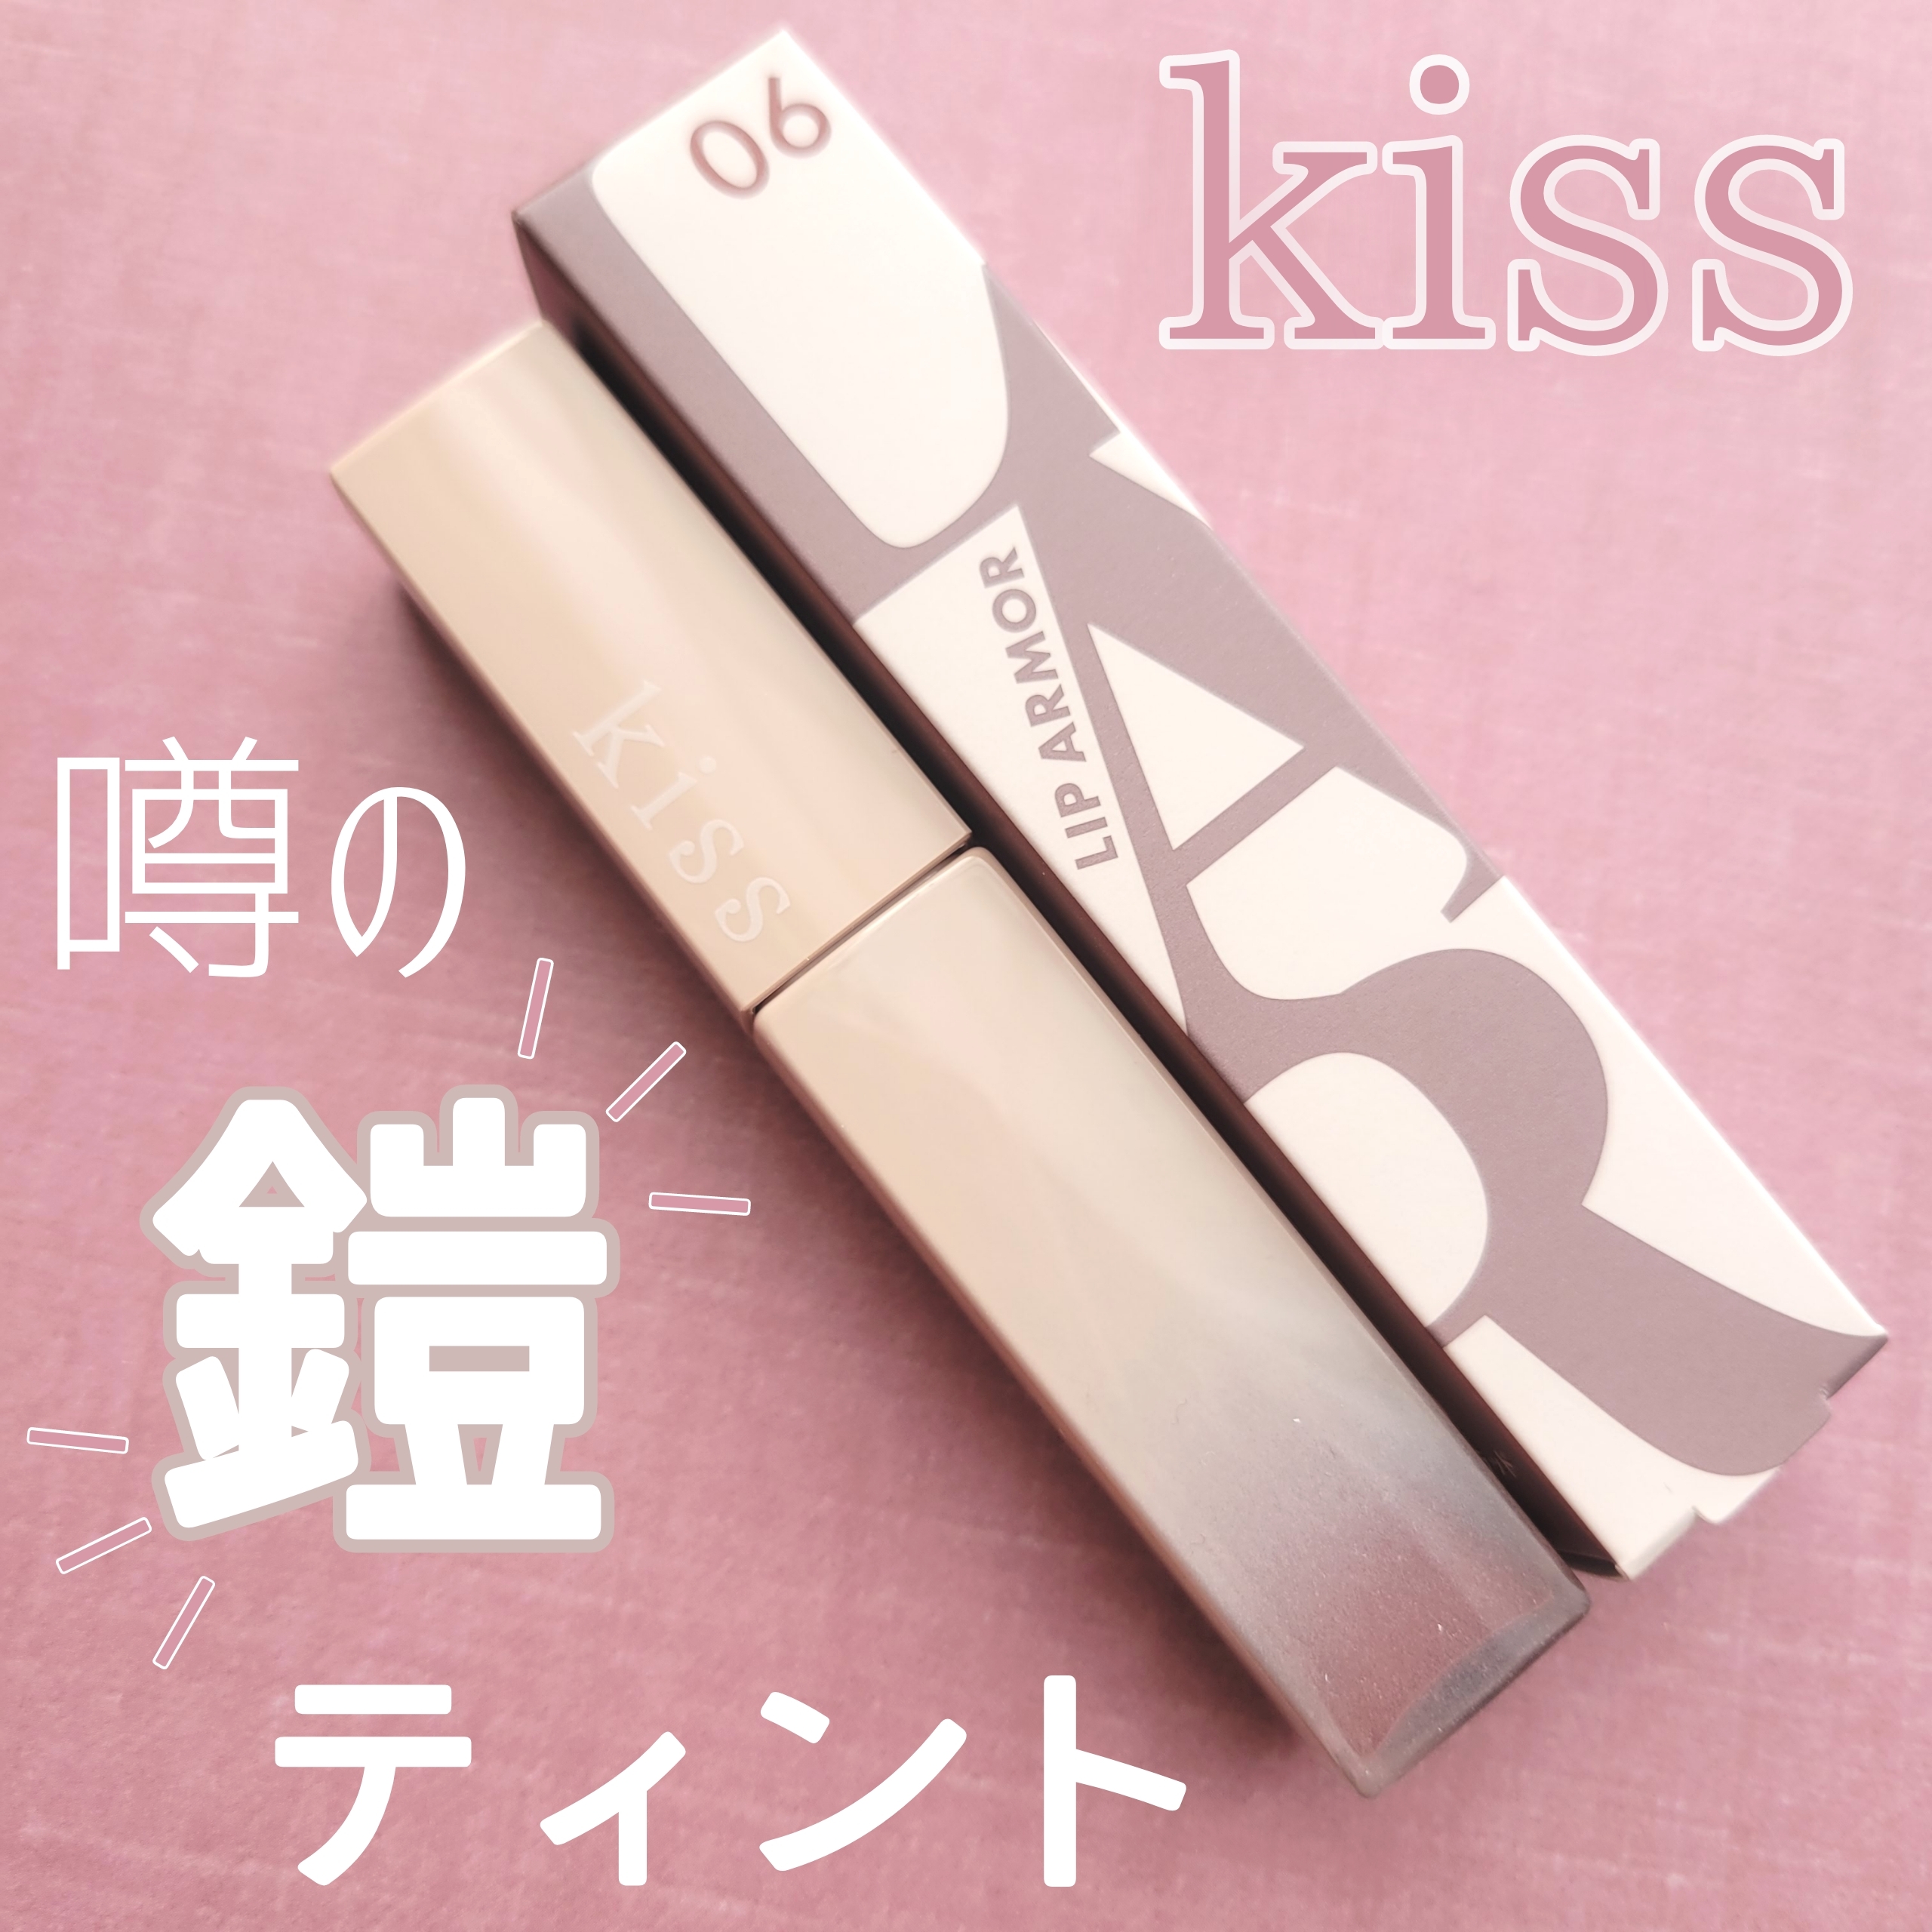 kiss(キス) リップアーマーの良い点・メリットに関する白雪りんごさんの口コミ画像1